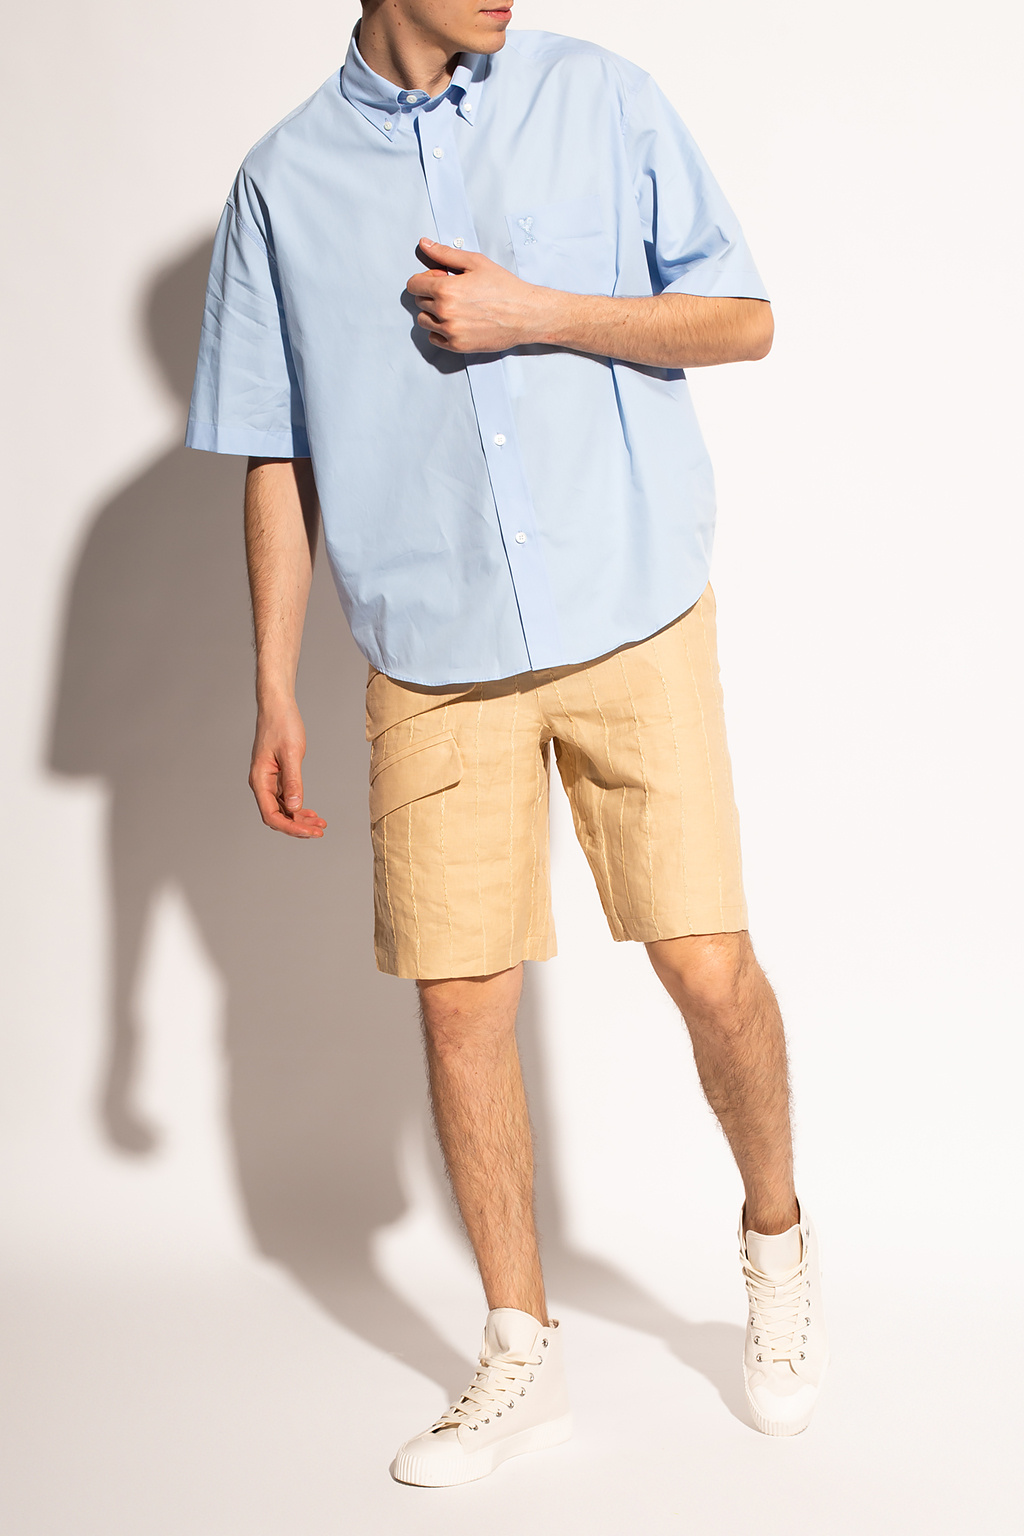 sleeve shirt  Boxy Extreme Crinkle Shirt And Short - Men's